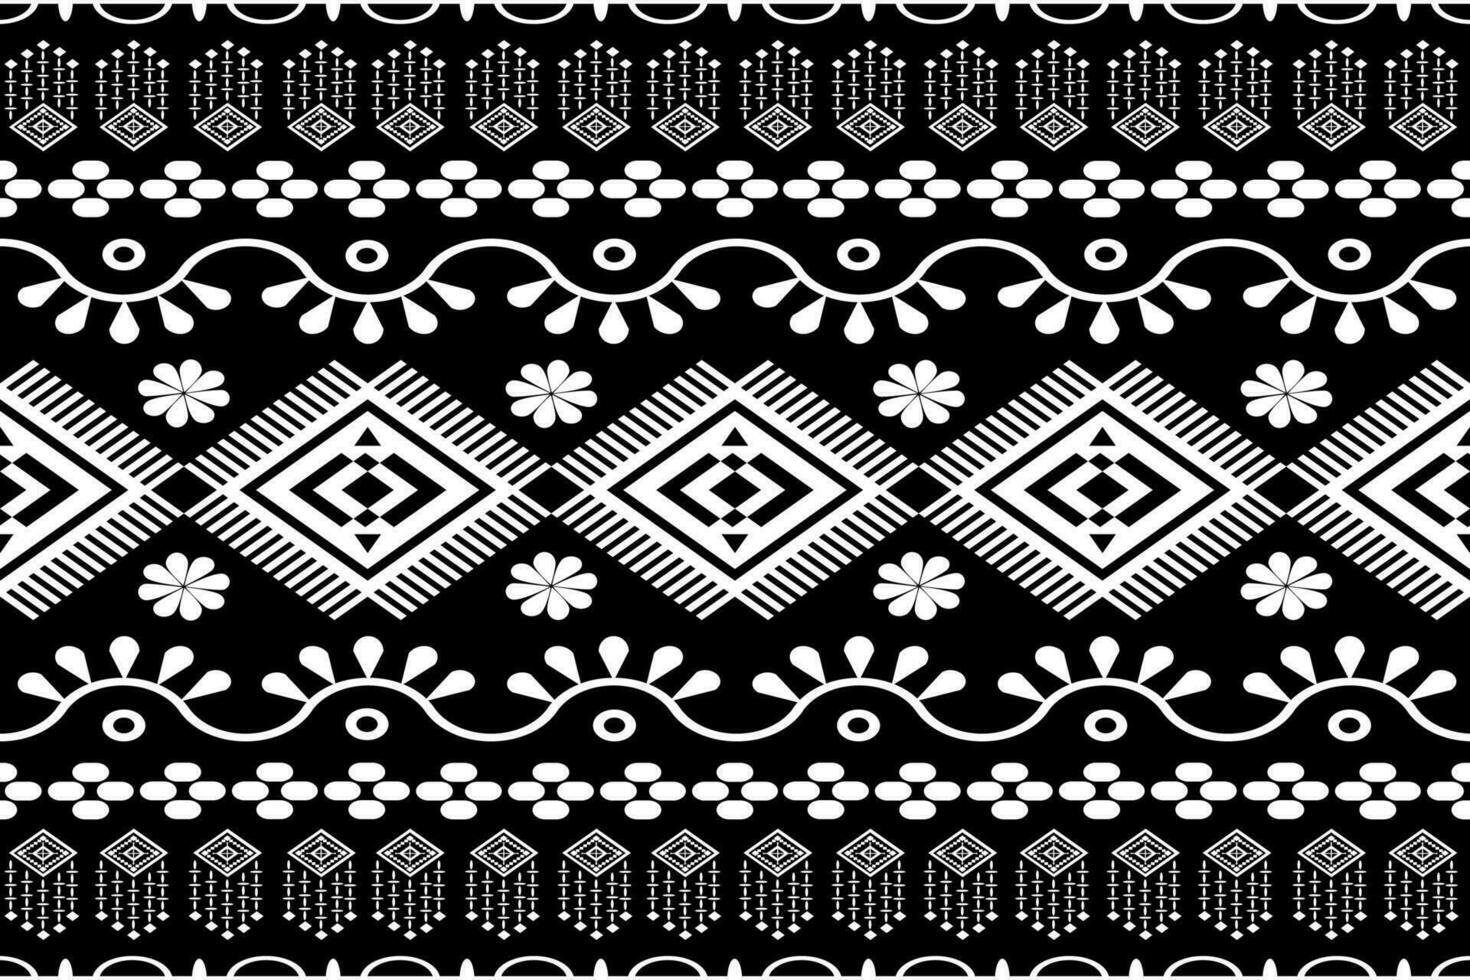 textiel digitaal ikat etnisch ontwerp reeks van damast grens barok patroon achtergronden geschenk kaart kader voor Dames kleding gebruik mughal paisley abstract wijnoogst Turks Indisch klassiek structuur afdrukken in stoffen vector